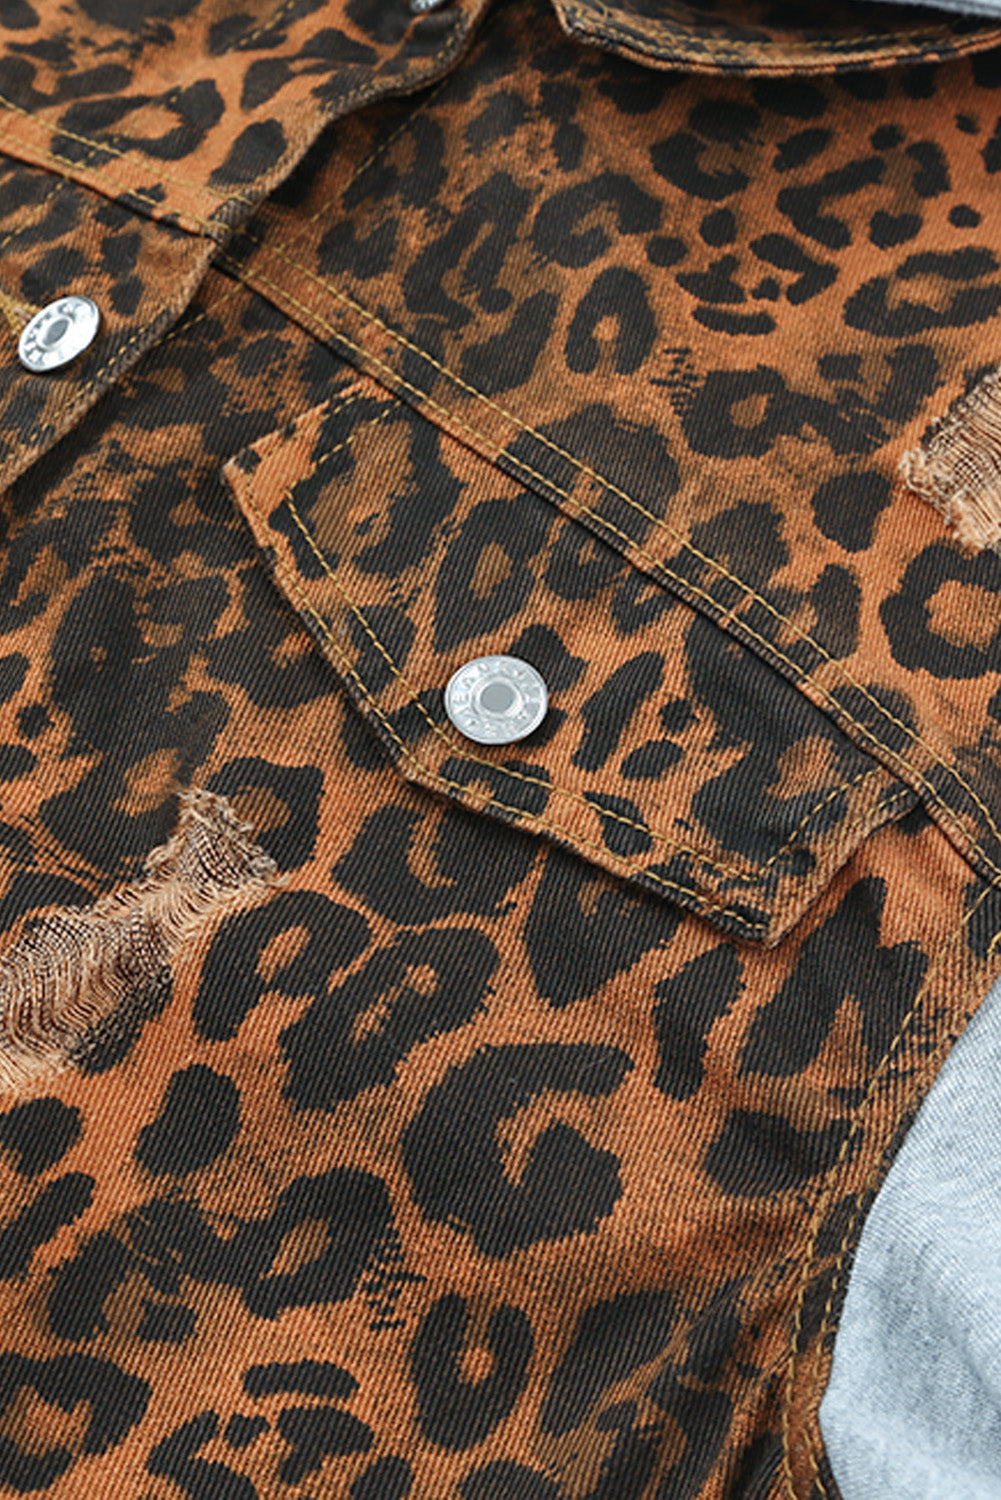 Jeansjacke mit Leopardenmuster und zerrissener Kapuze